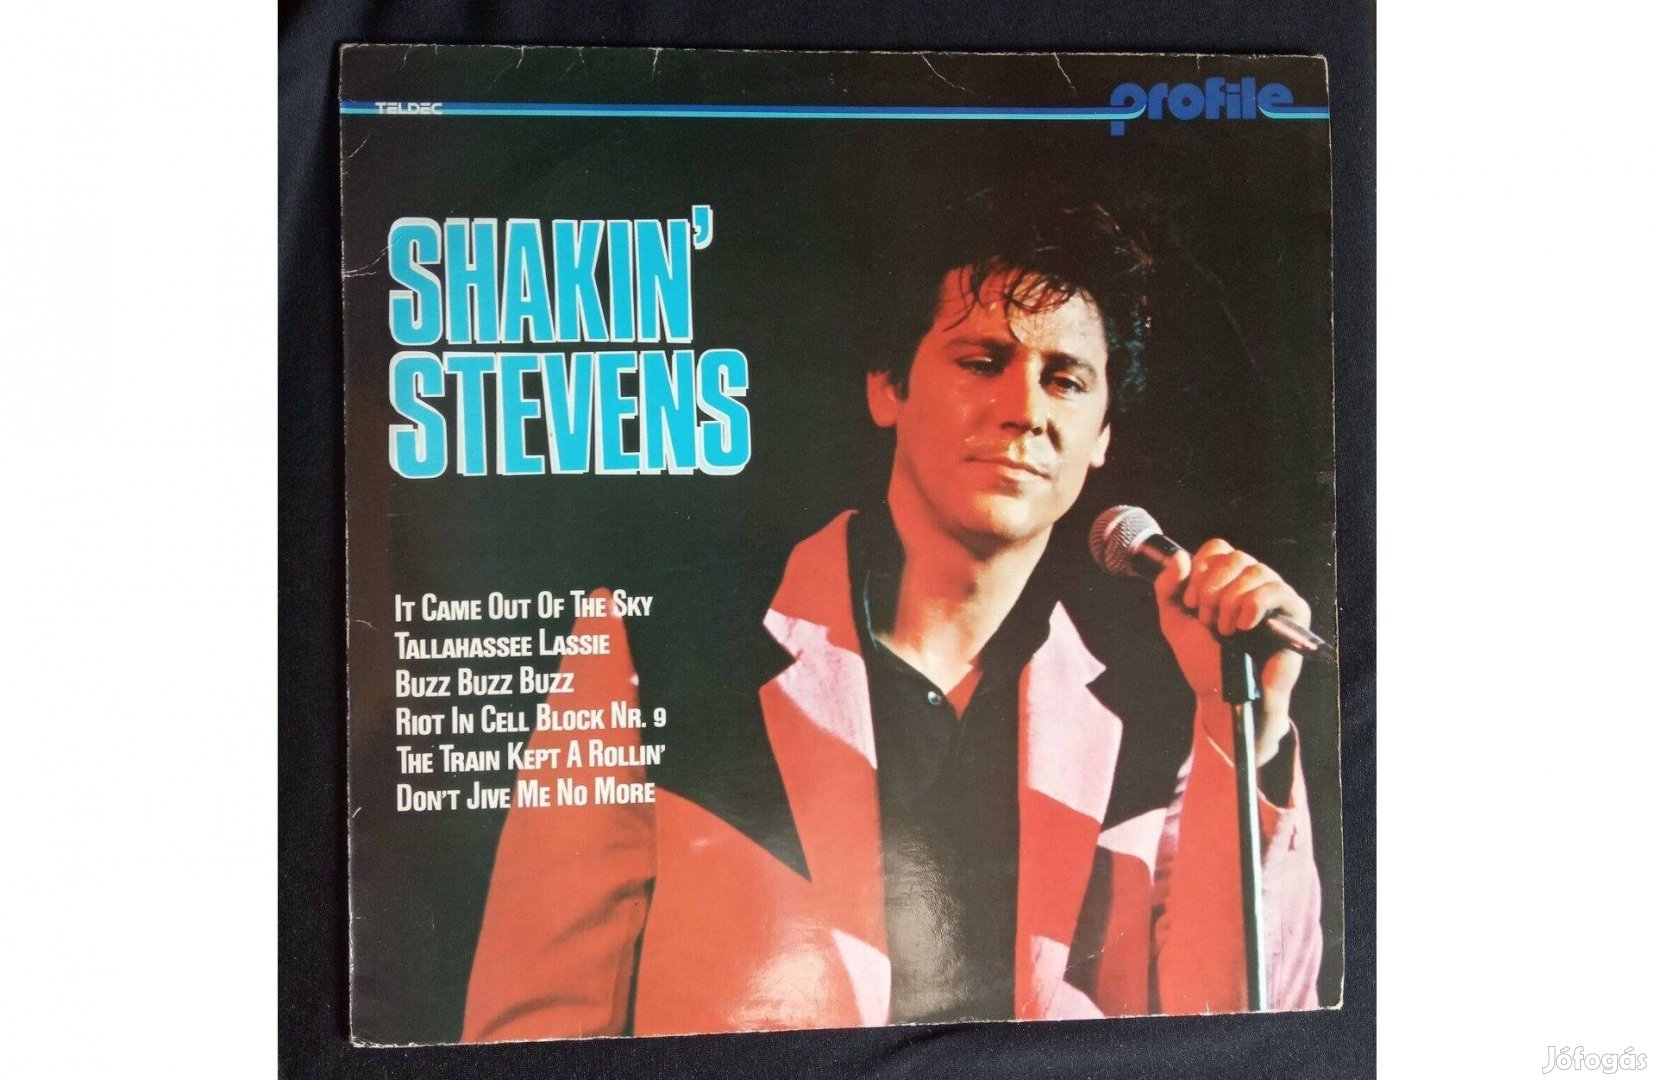 Shakin' Stevens Profile - szép állapotú rock and roll bakelit